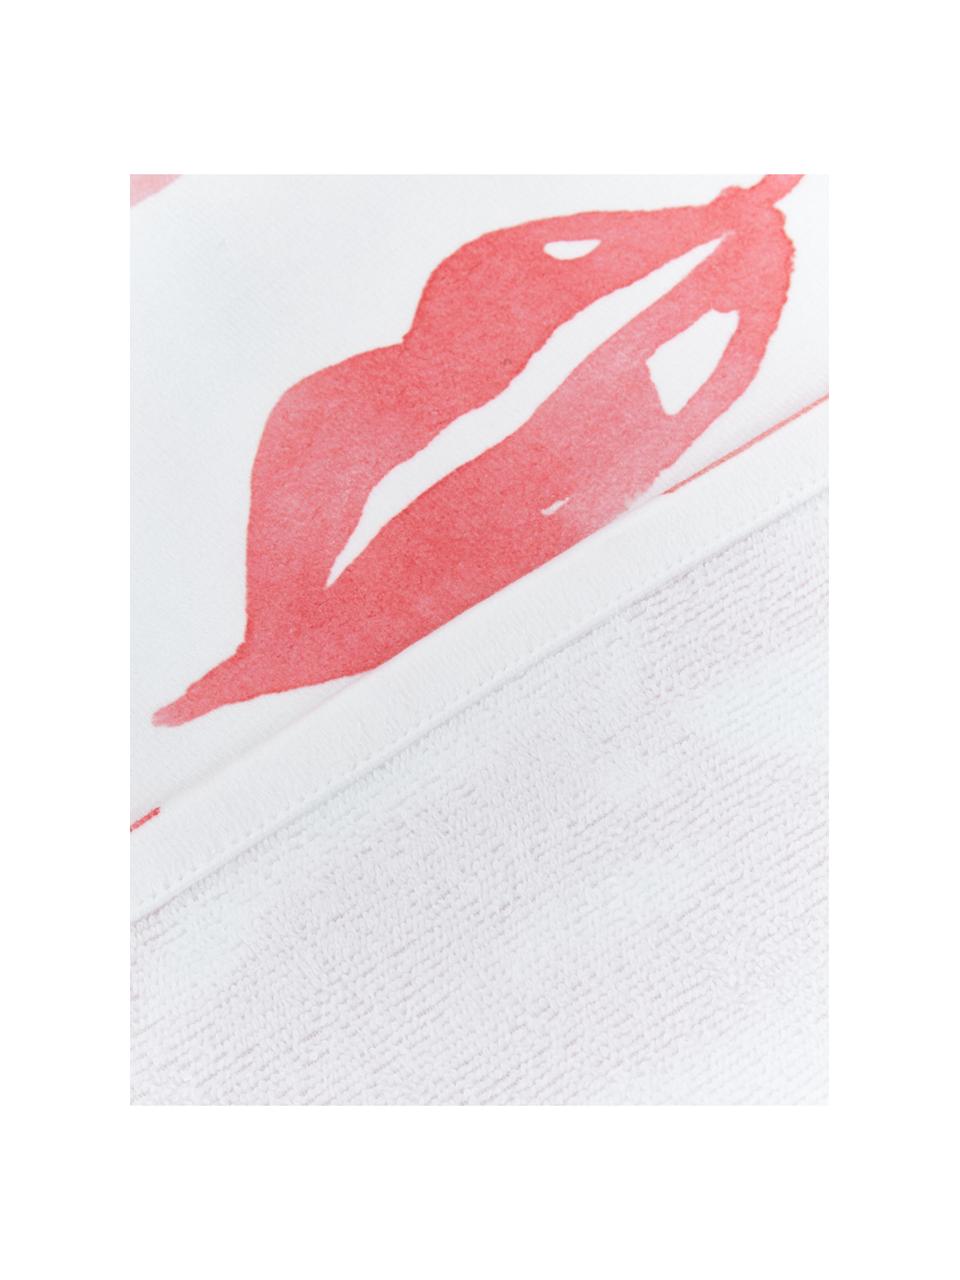 Ręcznik plażowy Pout, 55% poliester, 45% bawełna
Bardzo niska gramatura, 340 g/m², Biały, czerwony, blady różowy, S 70 x D 150 cm